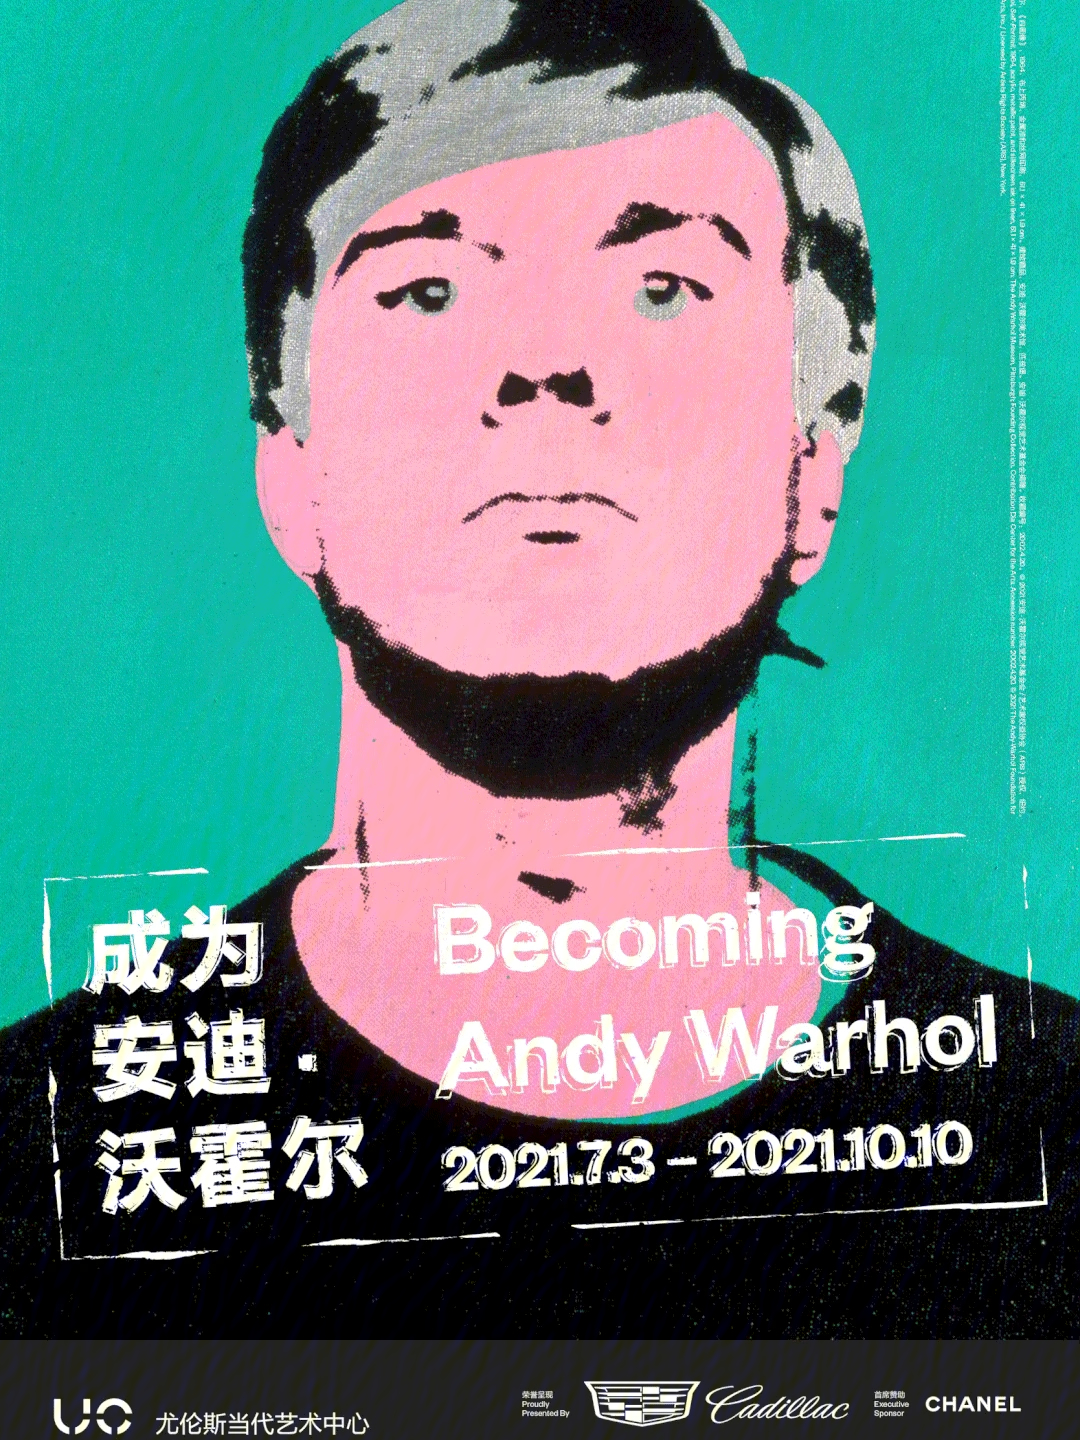 传奇波普艺术家安迪·沃霍尔的艺术人生在中国最为全面的呈现,之后将